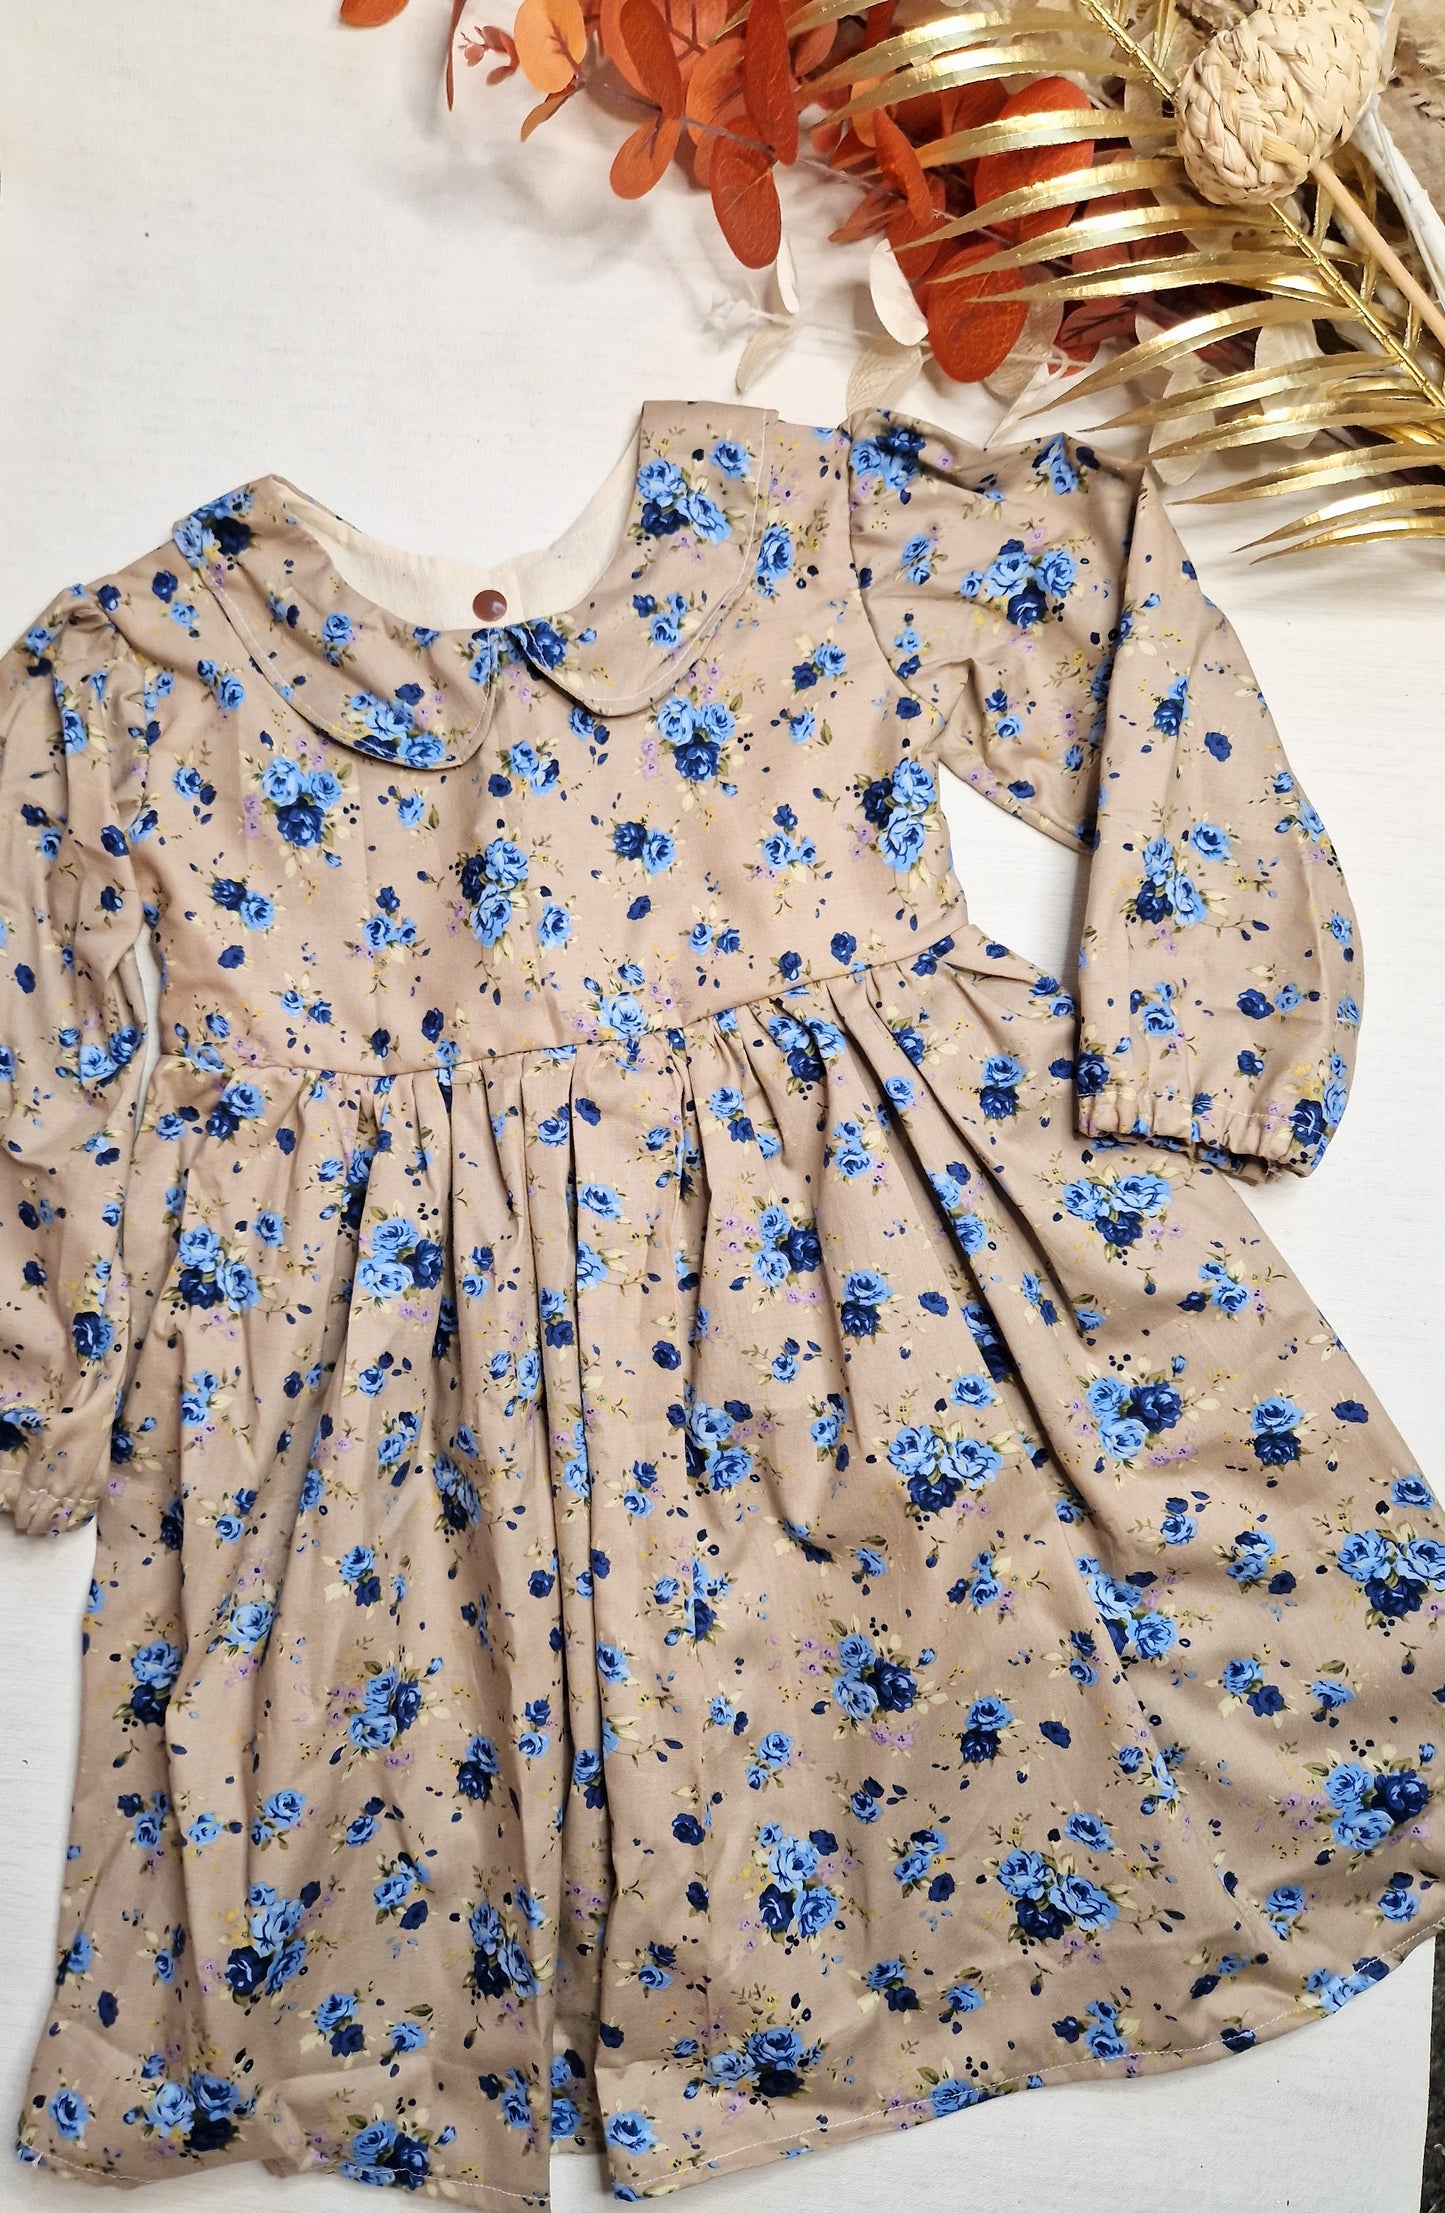 Blue floral Tilly dress